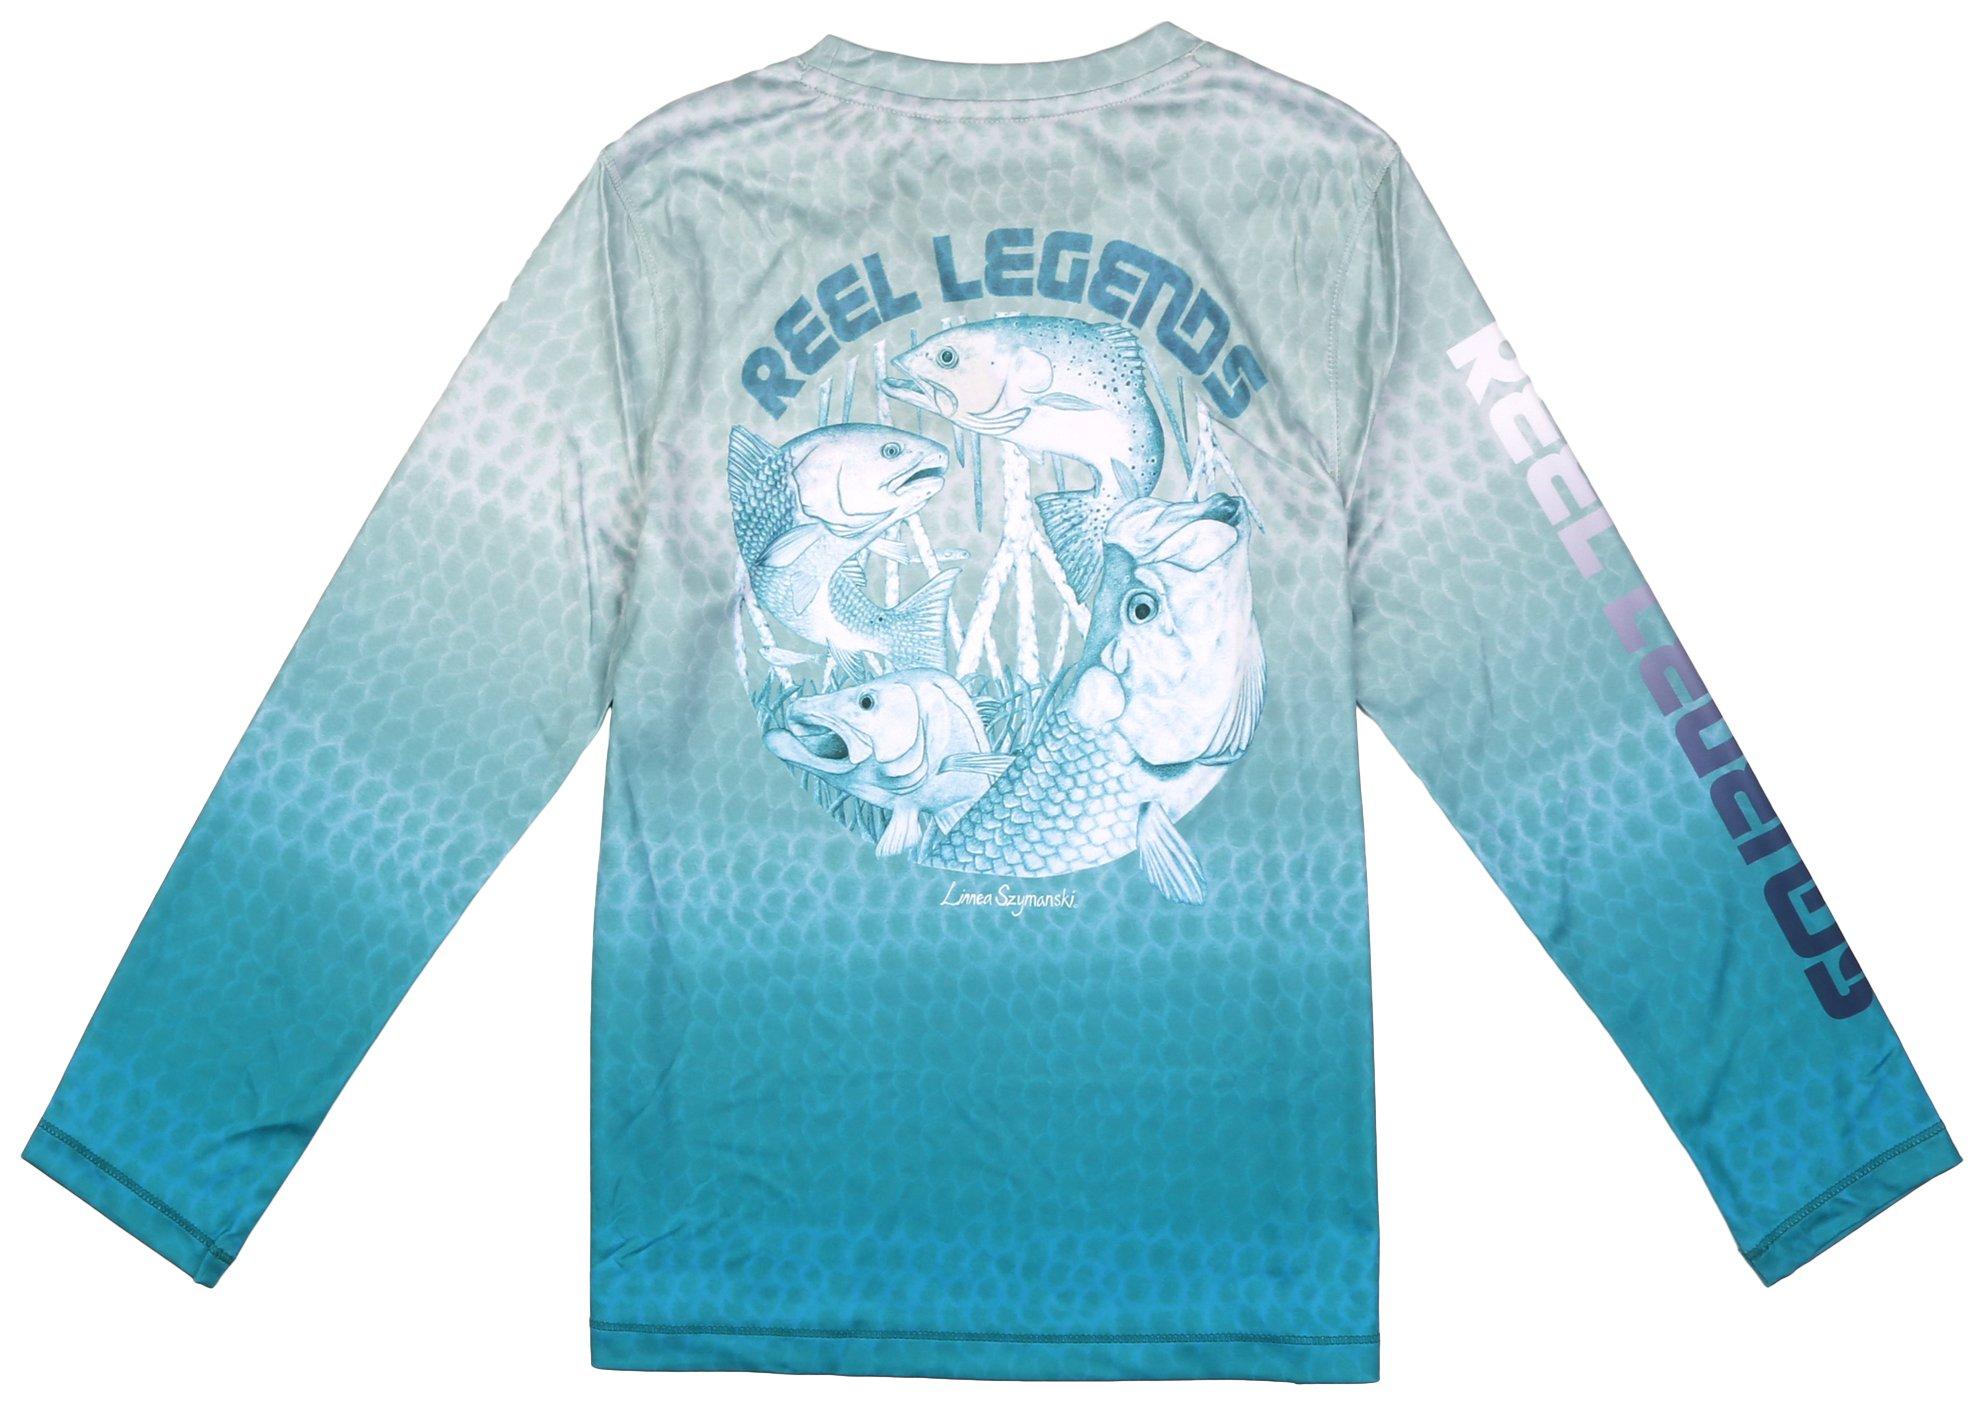 Reel Legends Little Boys Reel-Tec Long Sleeve Top